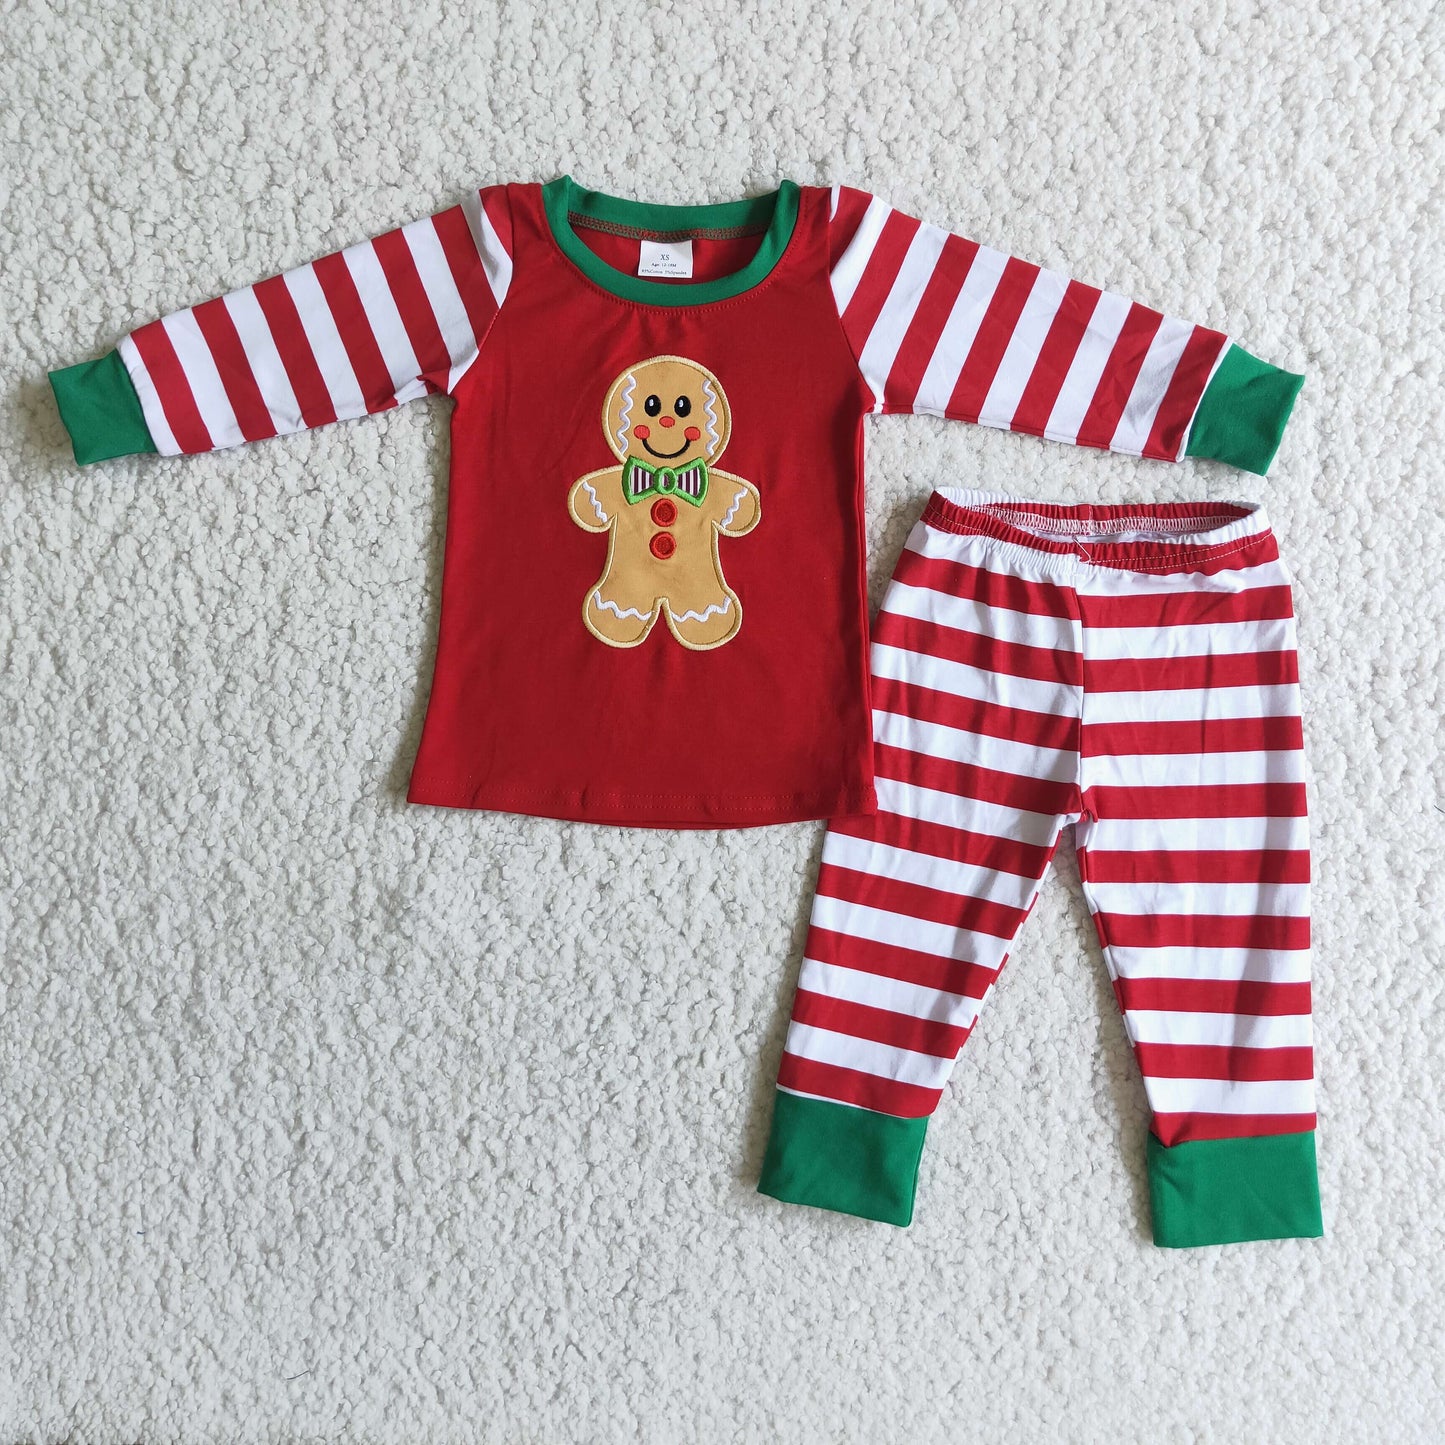 Gingerbread applique cotton Christmas boy pajamas